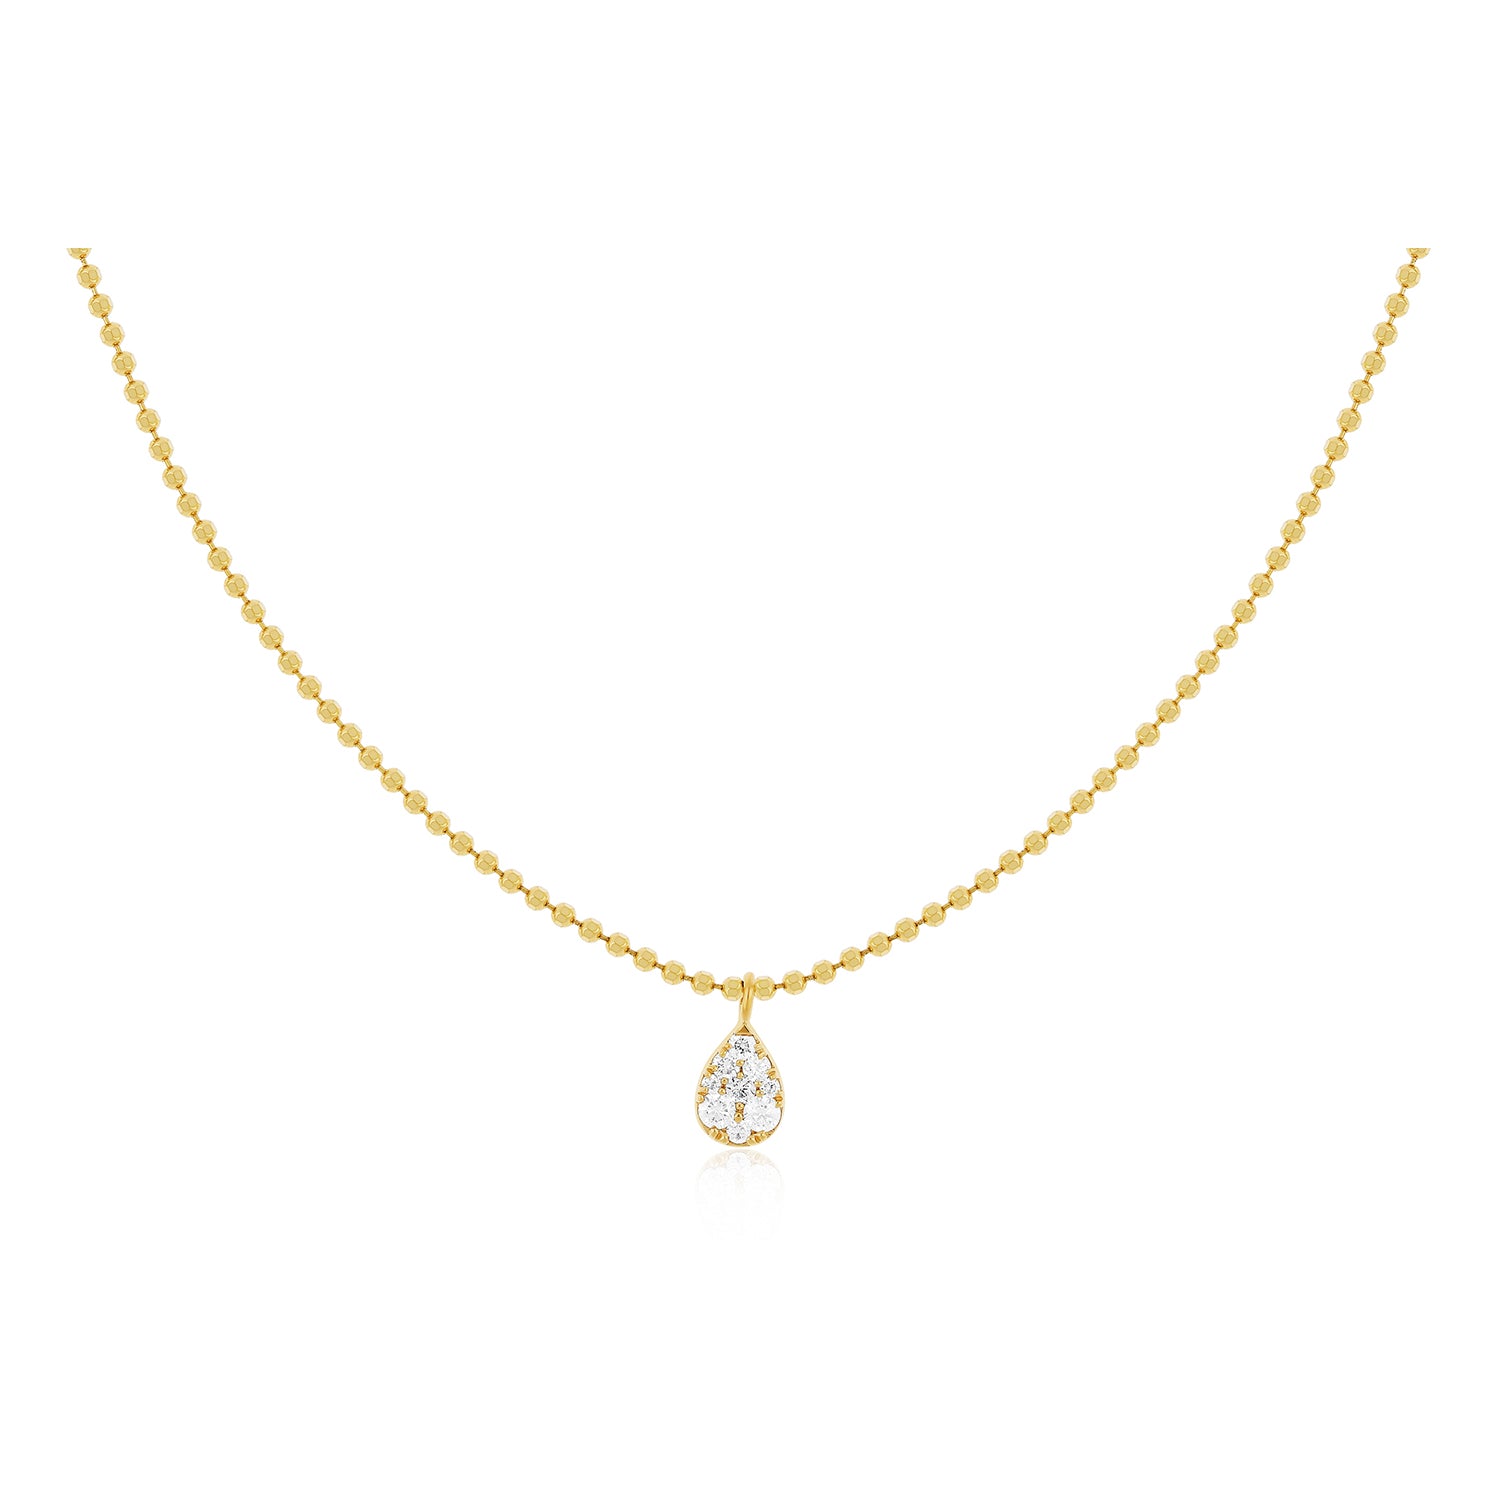 Full Cut Diamond Teardrop Necklace in 14k yellow gold